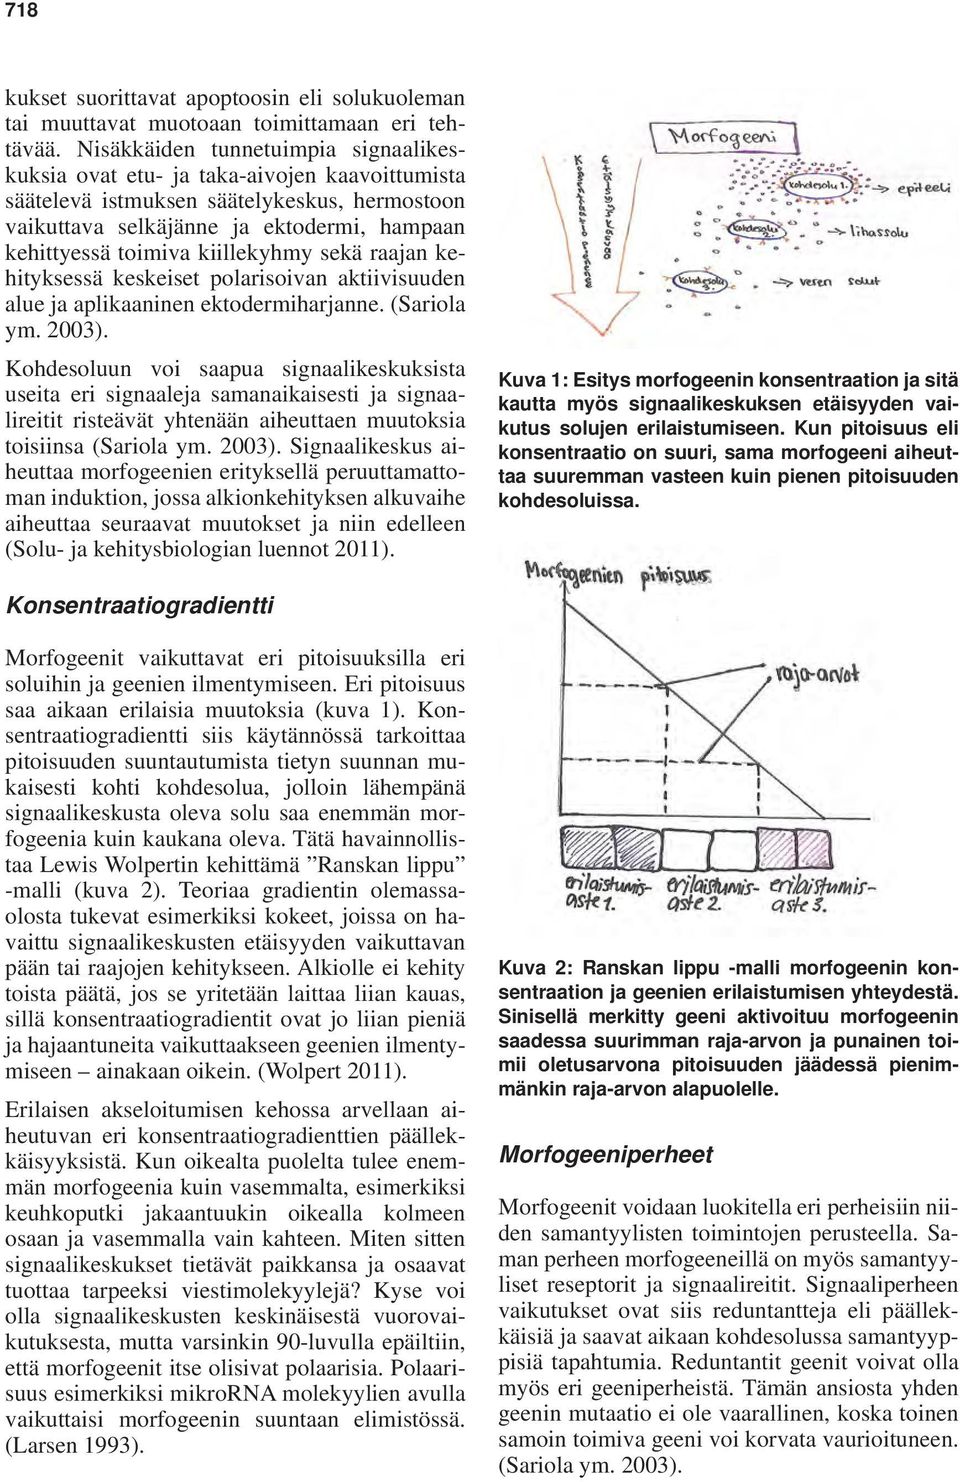 kiillekyhmy sekä raajan kehityksessä keskeiset polarisoivan aktiivisuuden alue ja aplikaaninen ektodermiharjanne. (Sariola ym. 2003).